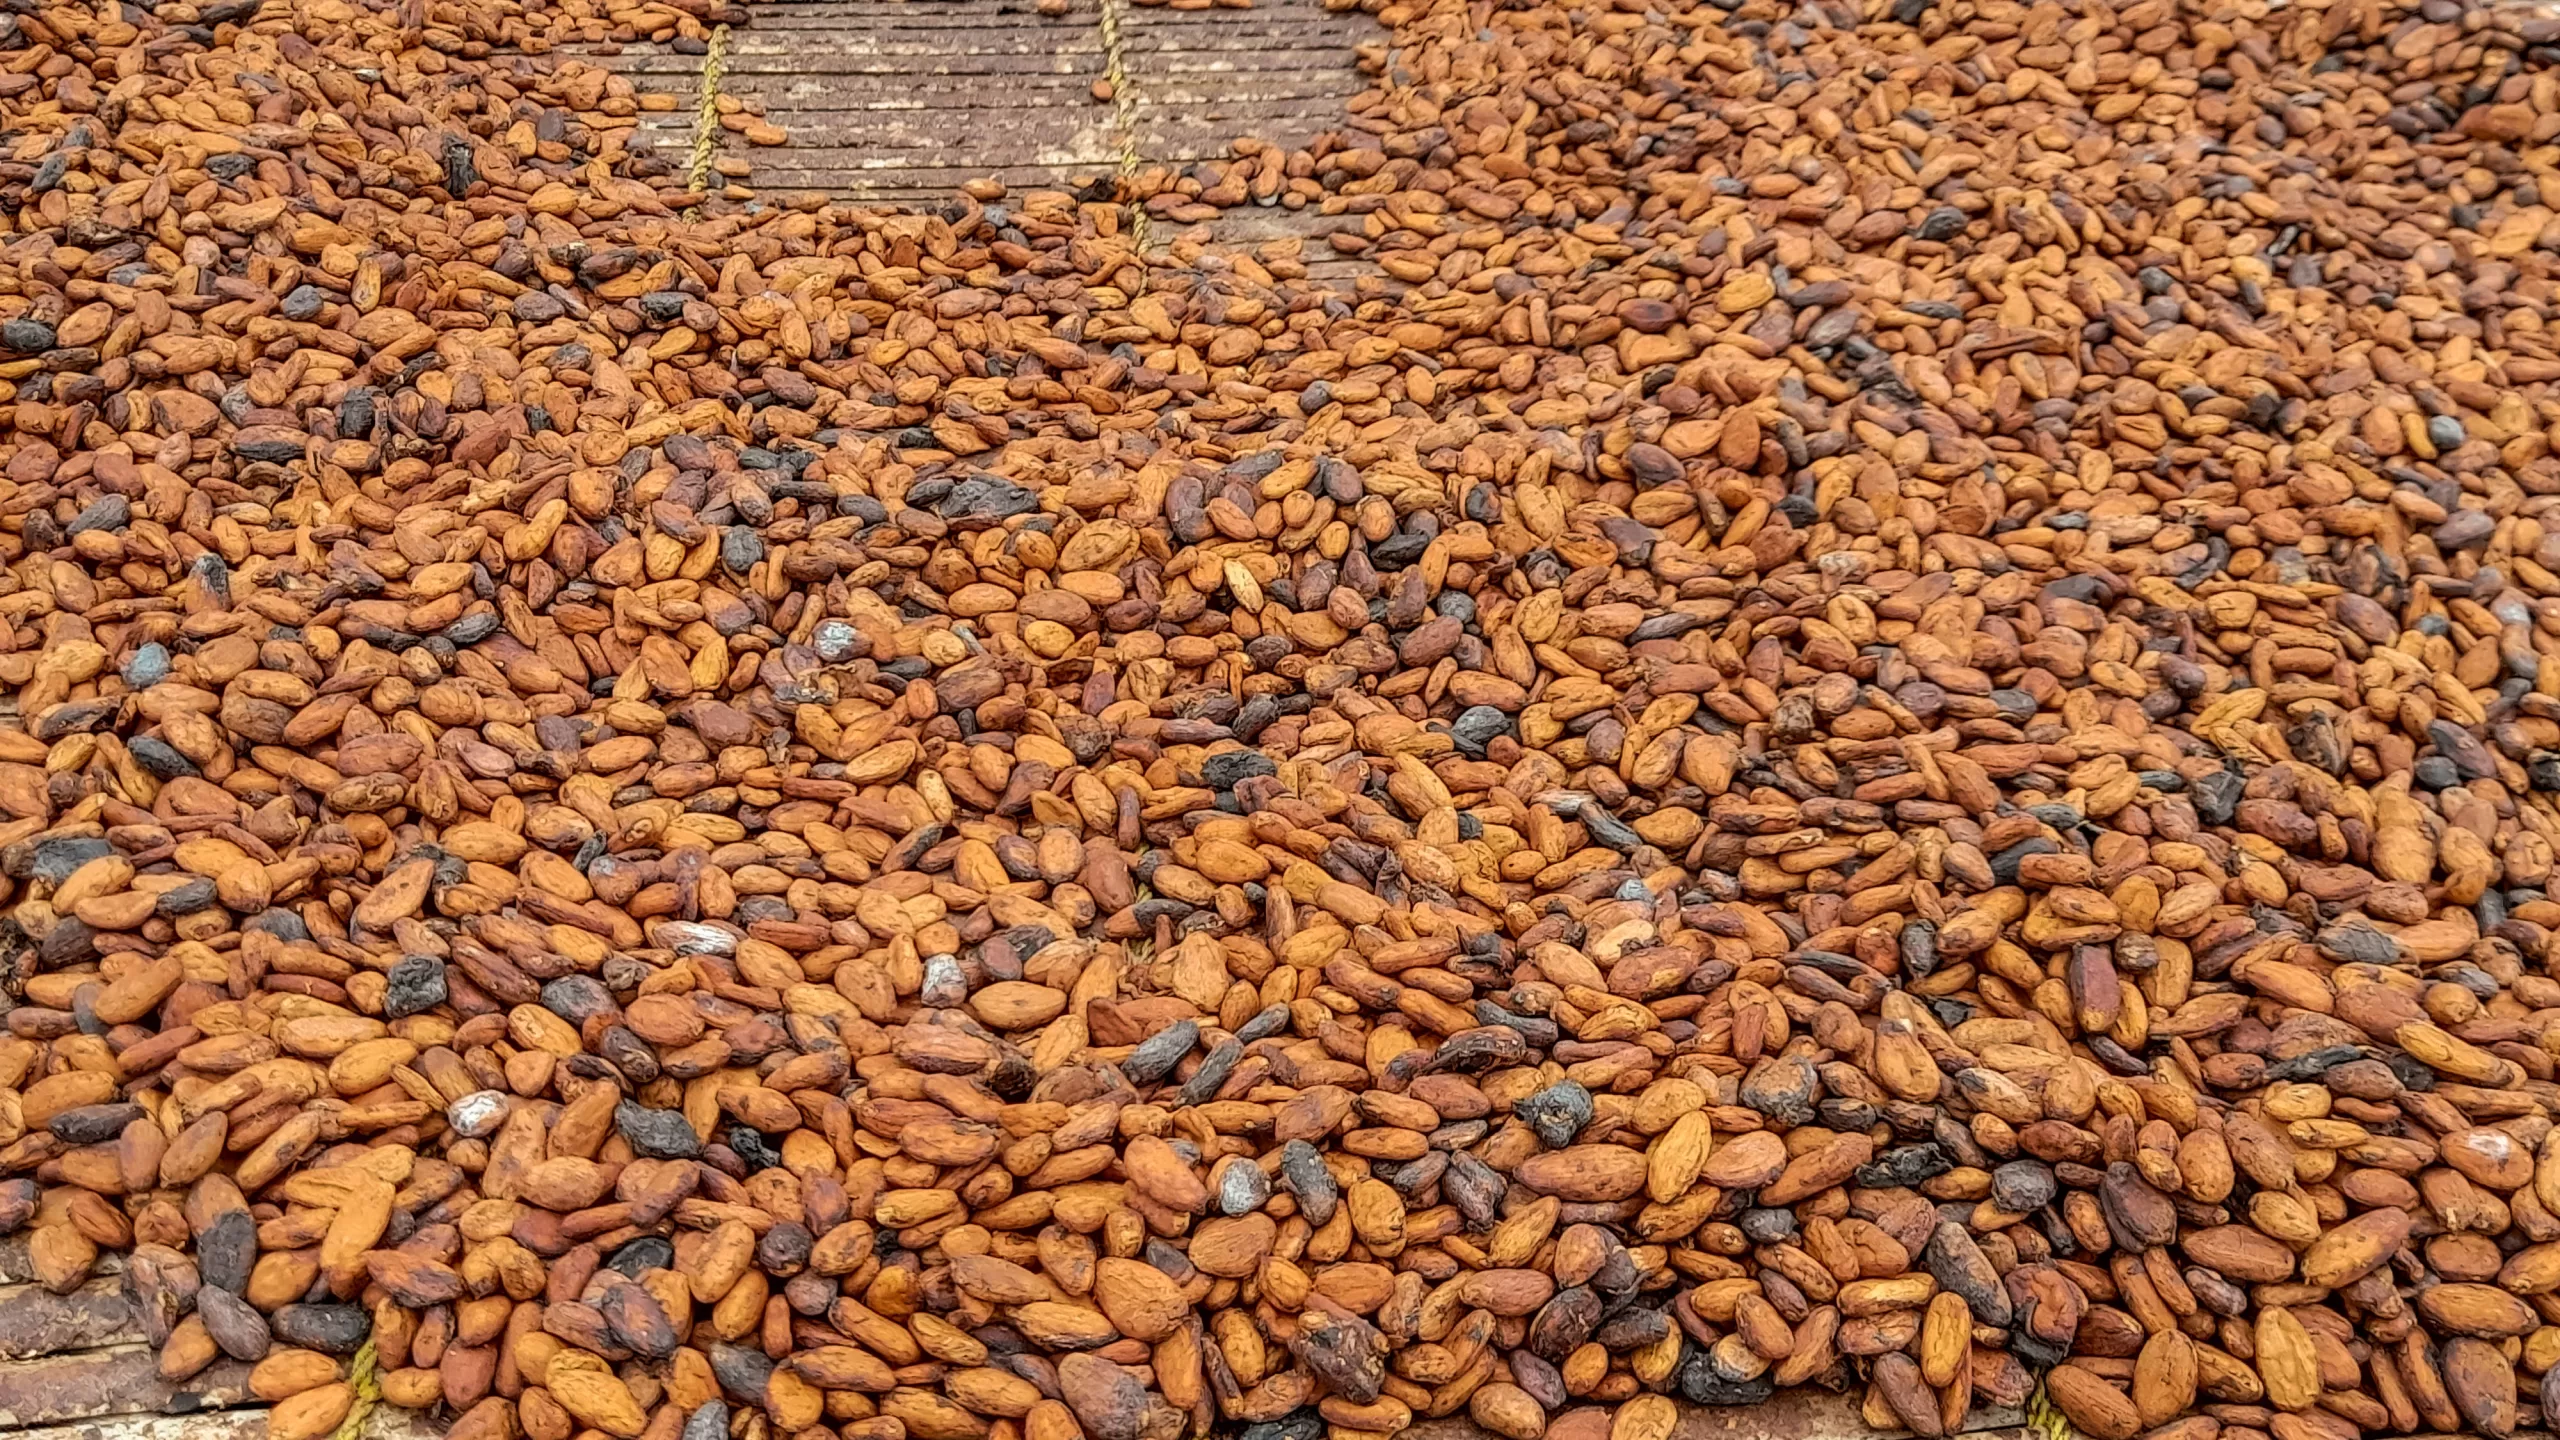 Cocoa beans, Cocoa crop, Ghana cocoa output,